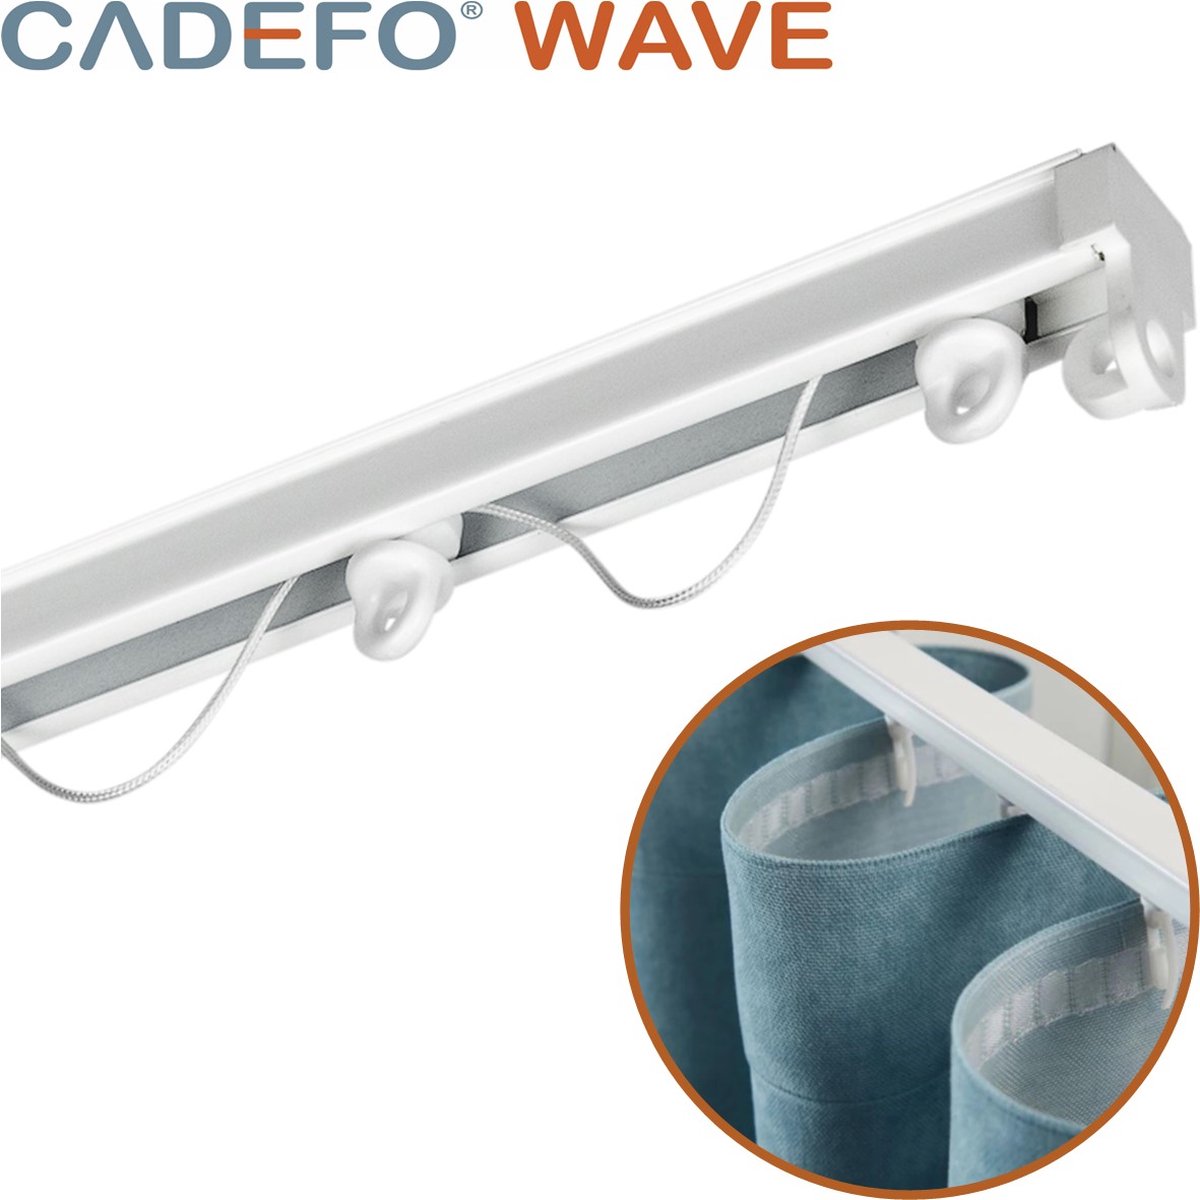 CADEFO WAVE (451 - 500 cm) Gordijnrails - Compleet op maat! - UIT 1 STUK - Leverbaar tot 6 meter - Plafondbevestiging - Lengte 468 cm